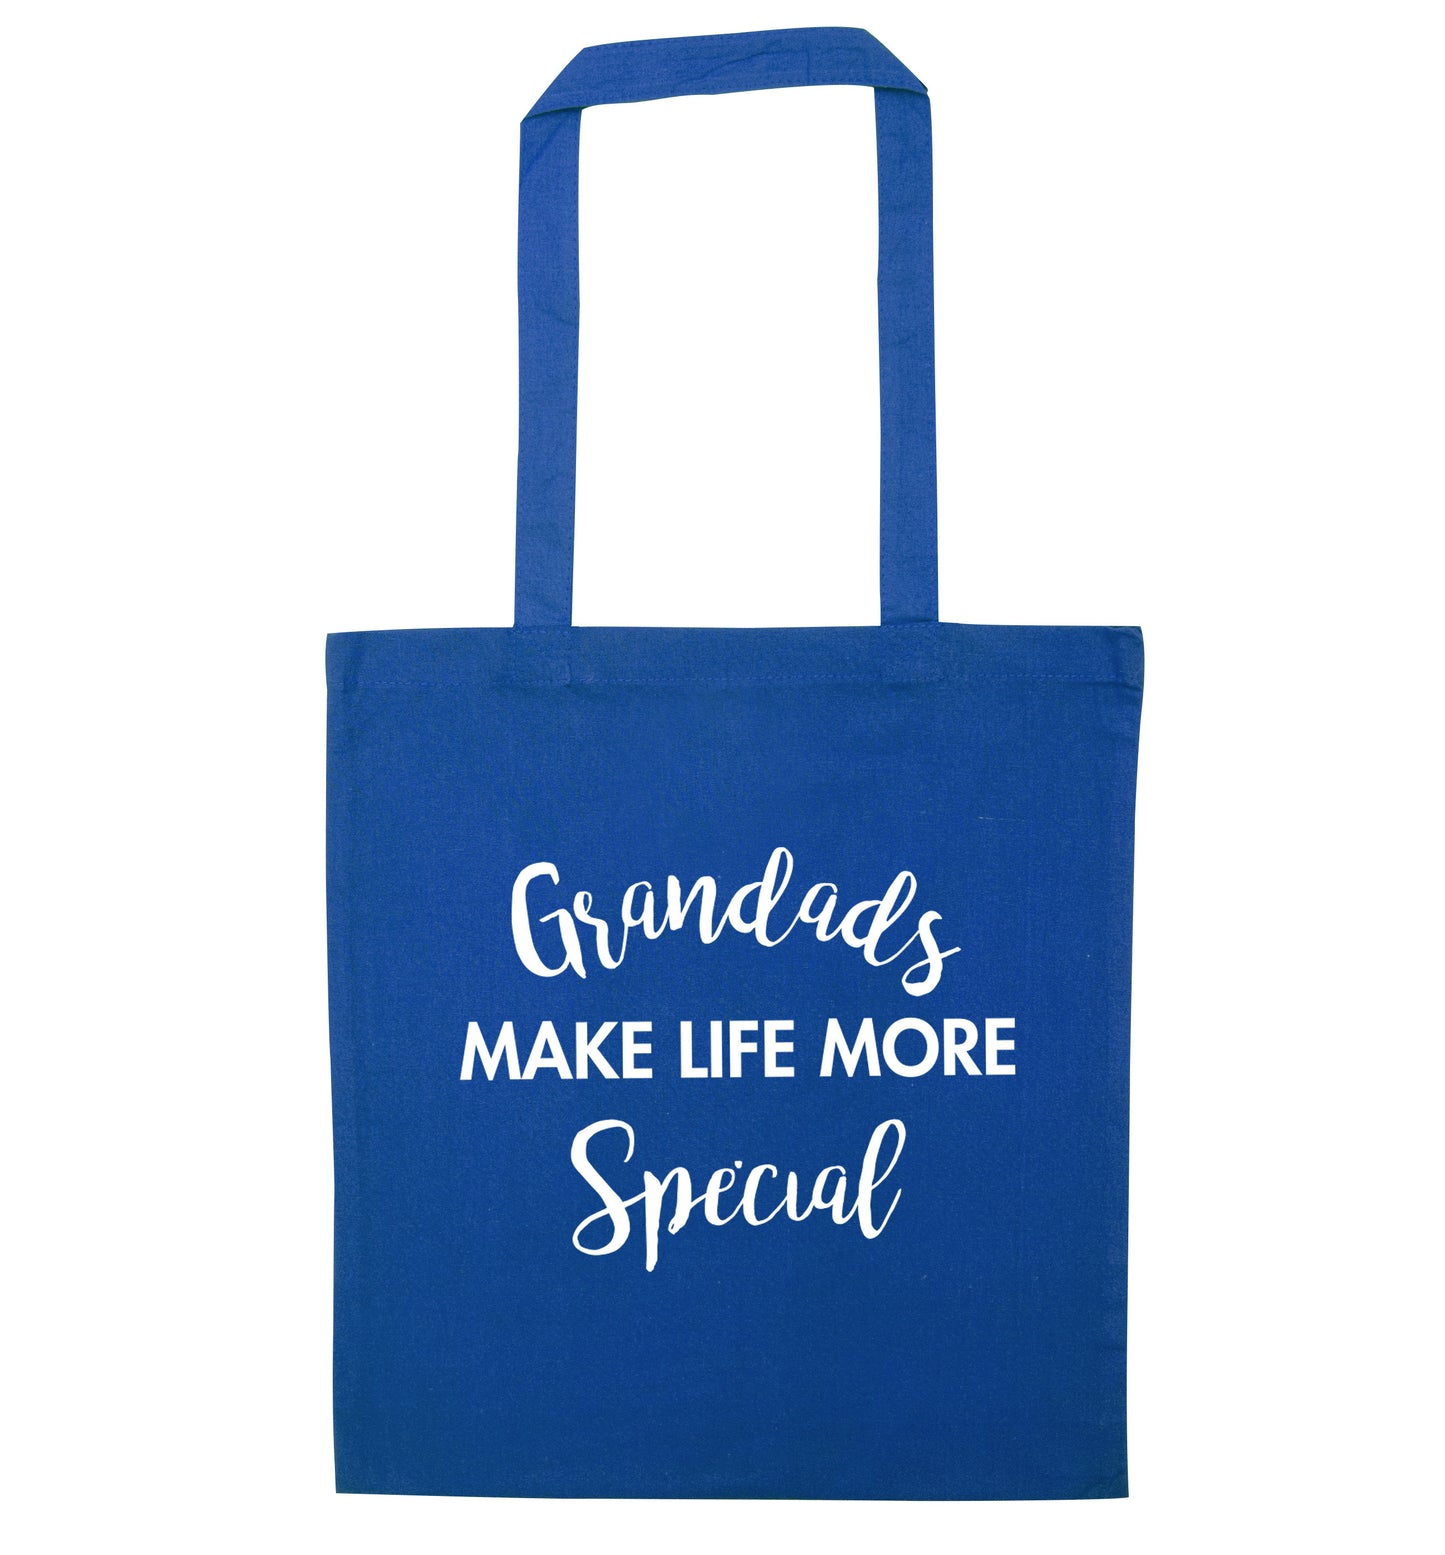 Grandads make life more special blue tote bag